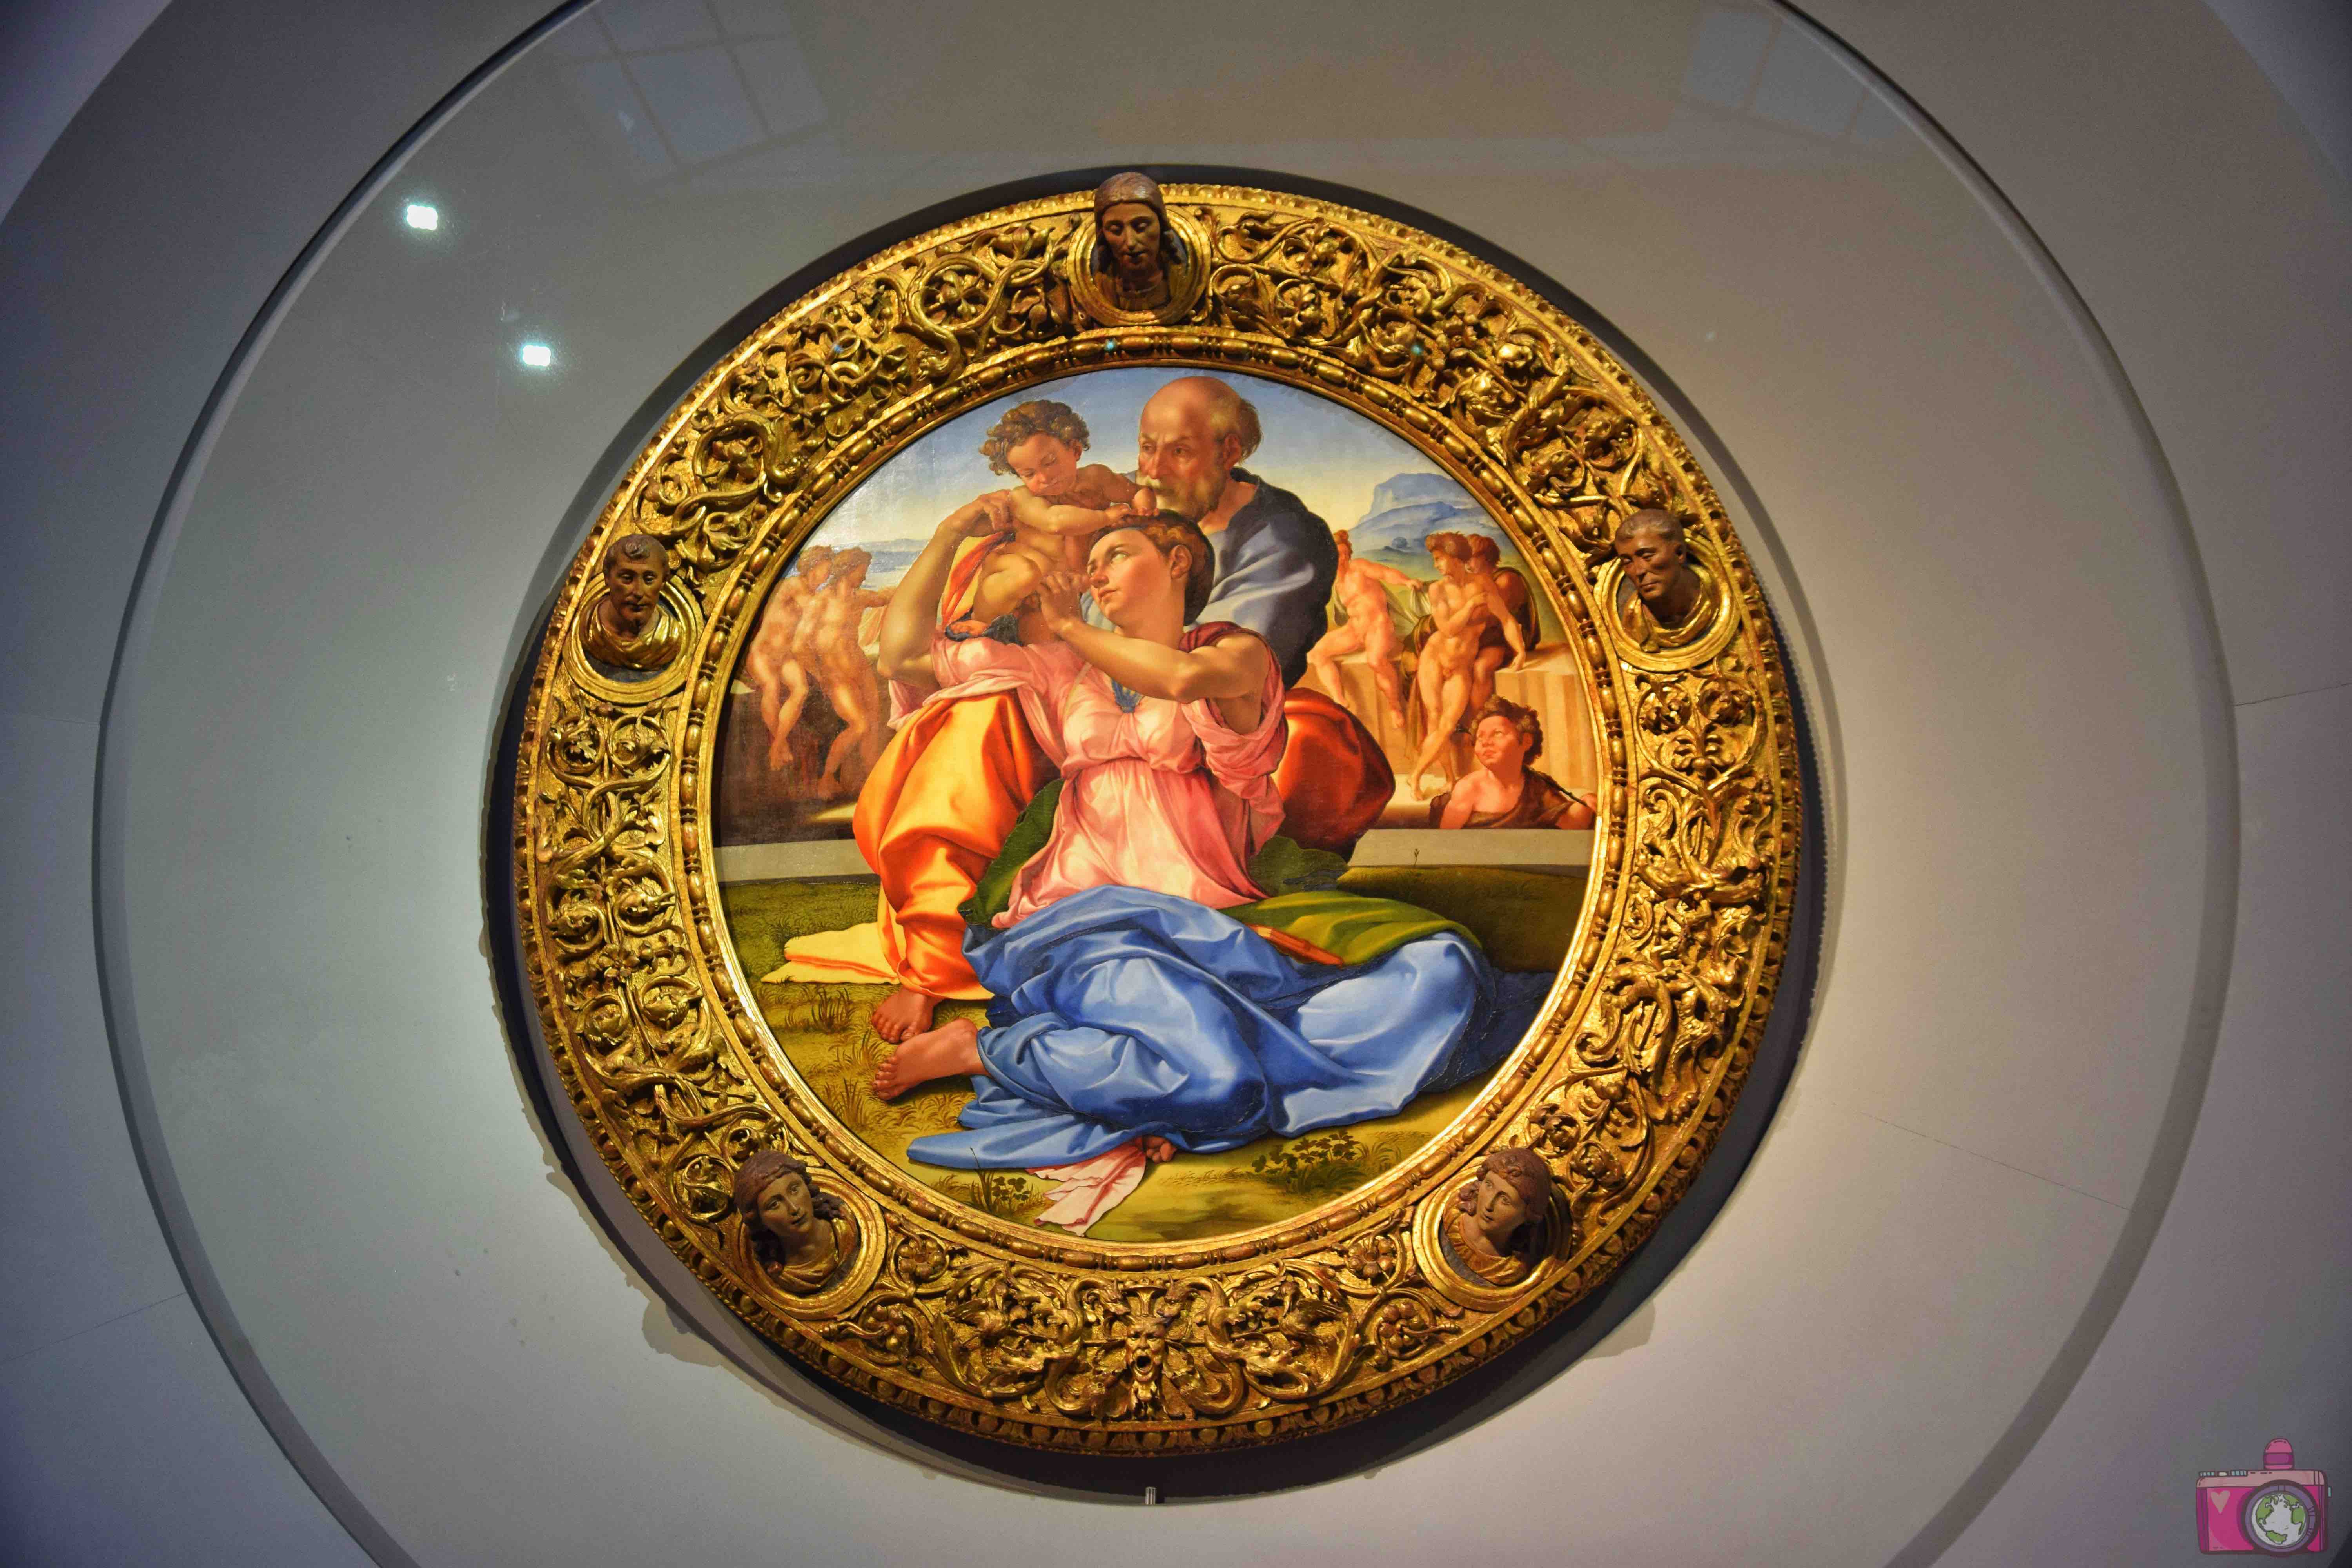 Gallerie degli Uffizi Tondo Doni Michelangelo